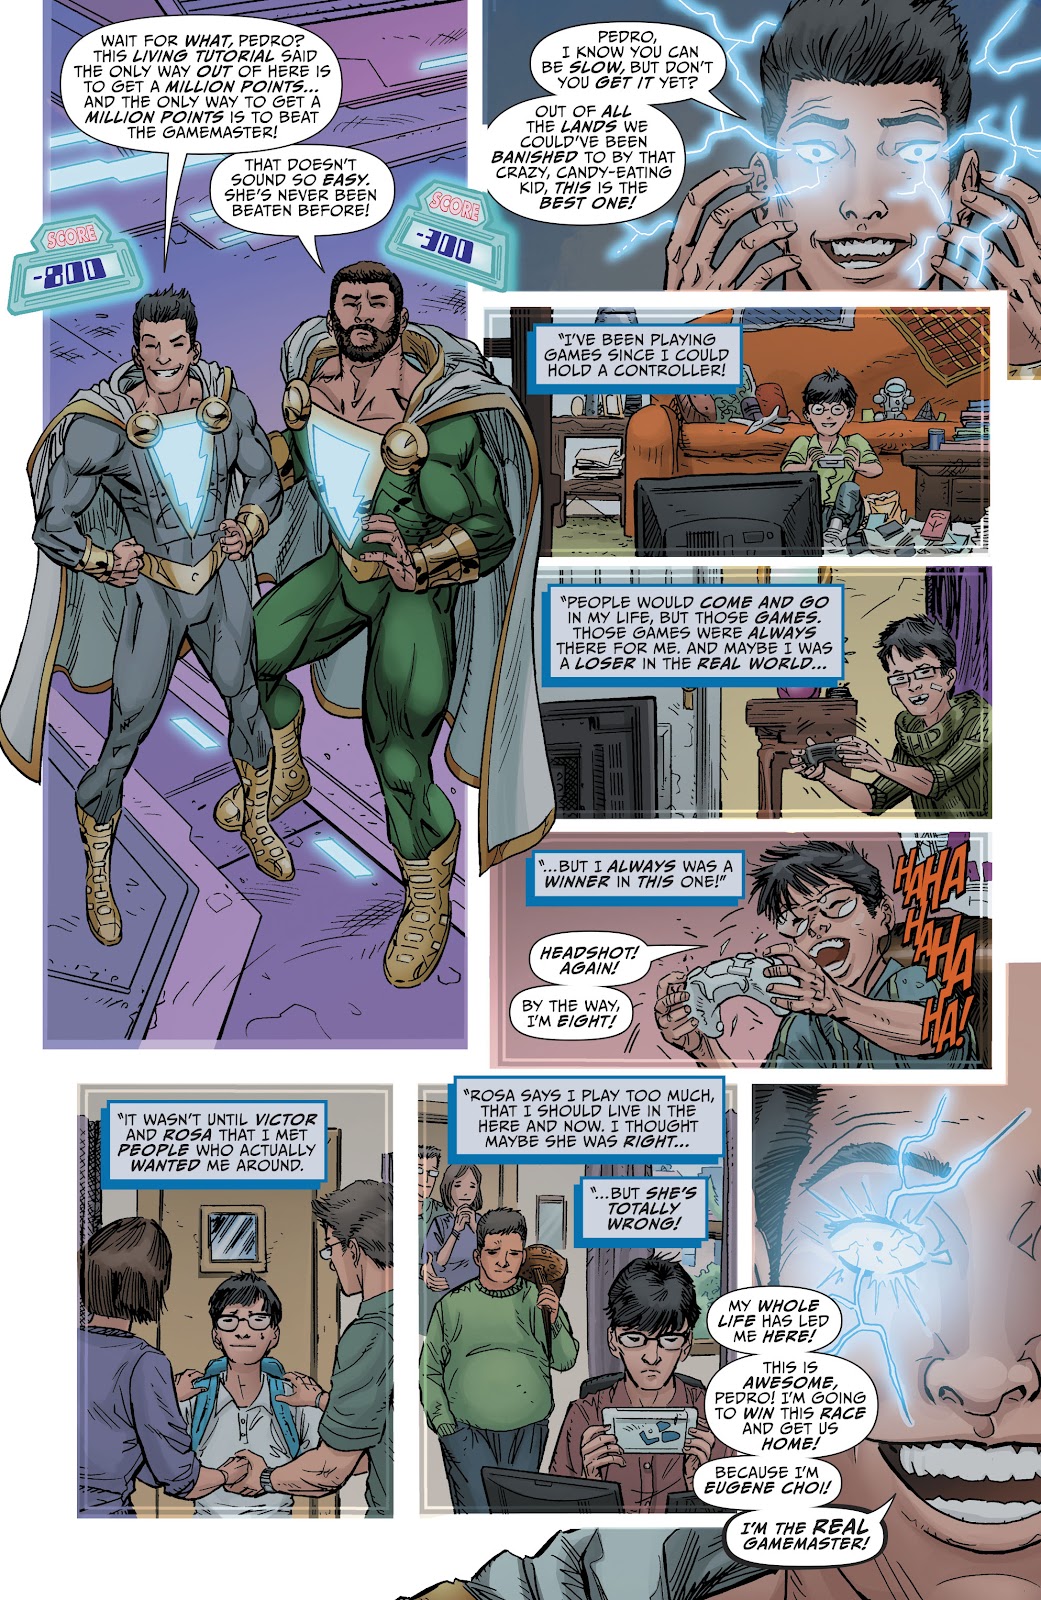 Shazam! (2019) issue 5 - Page 13